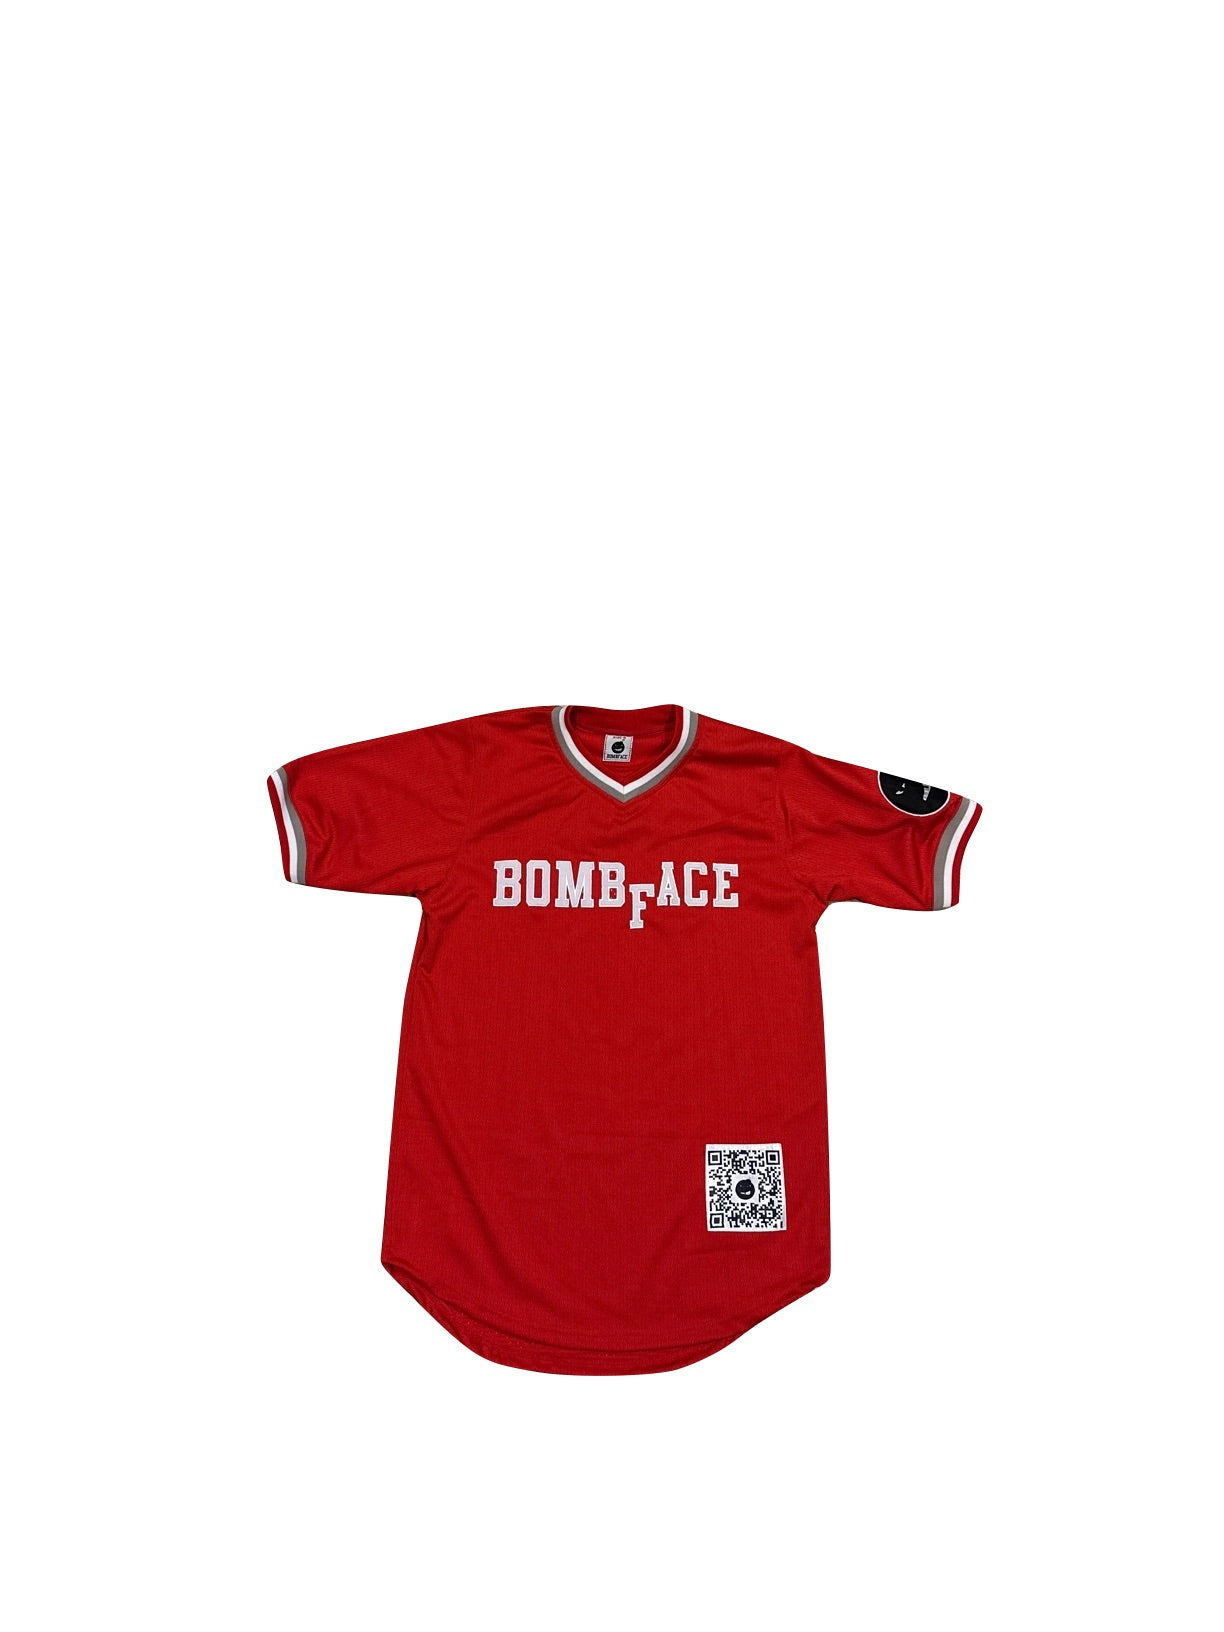 BombFace Red v-neck baseball jersey. Red jersey, Red baseball jersey, v-neck red baseball jersey, BombFace Jersey, Cotton red baseball jersey. 